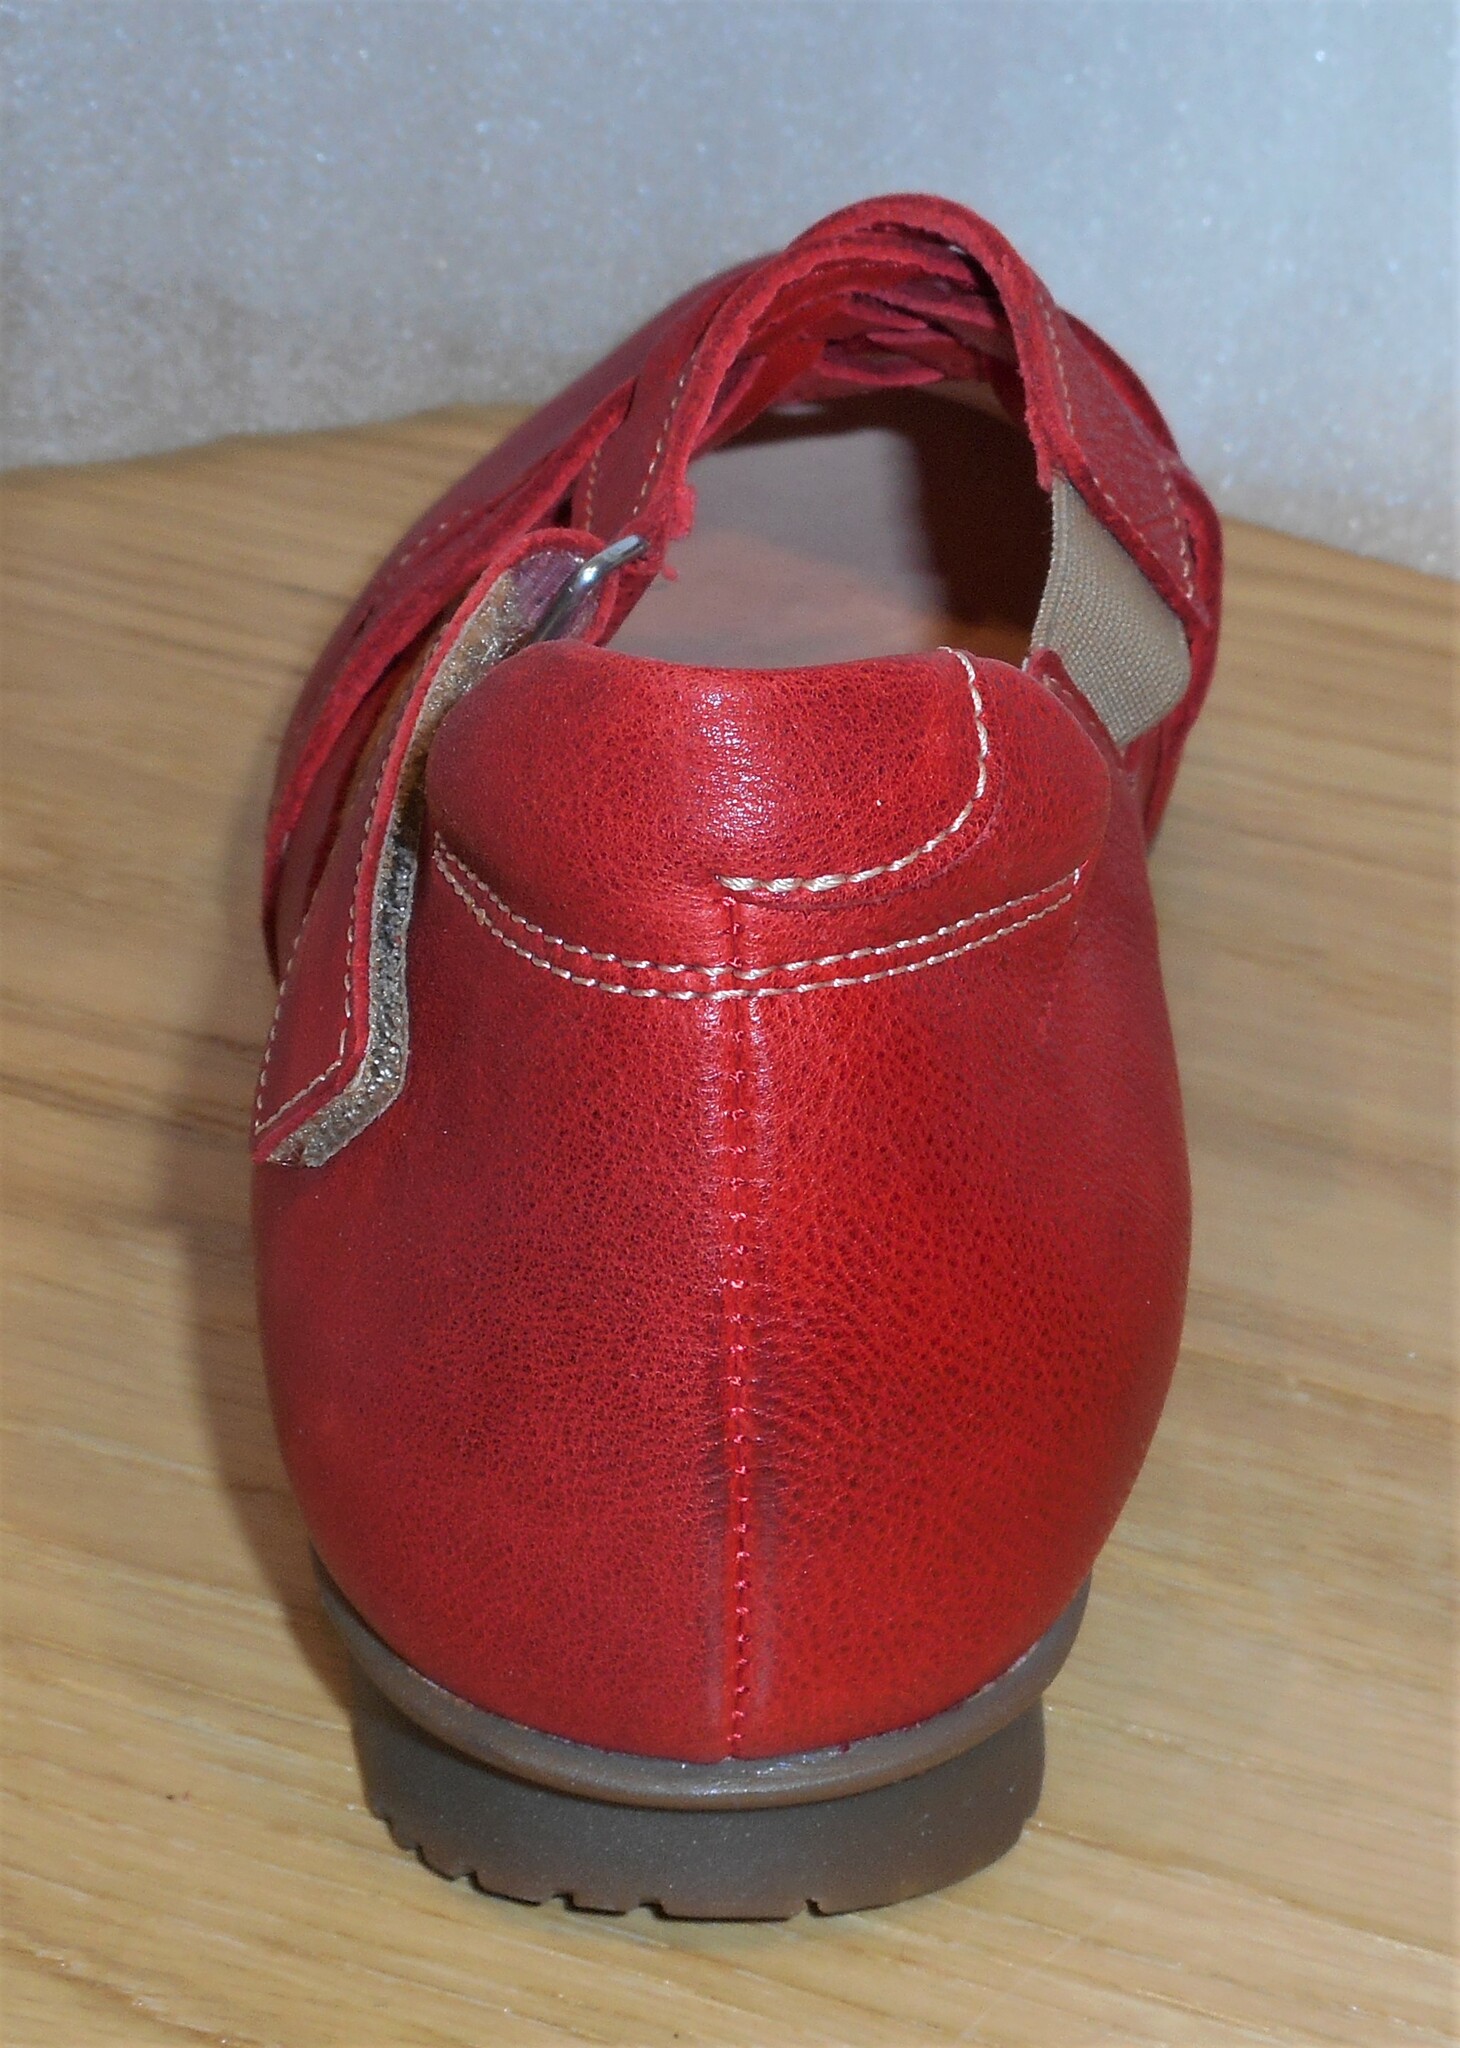 Röd sko med korslagda remmar - fabrikat Think!